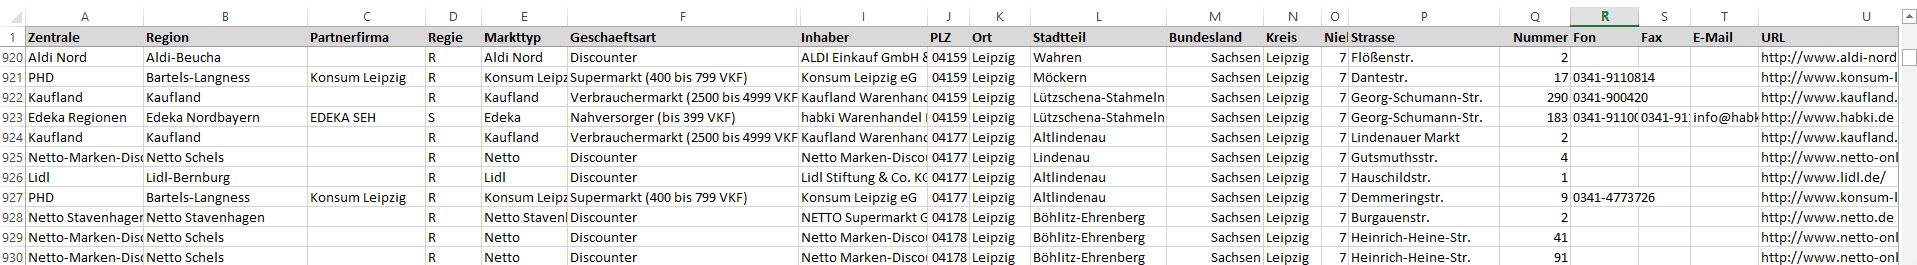 Daten-Beispiel der Filial-Adressen der Supermarkt und Lebensmittel-Einzelhandel-Standorte in Deutschland